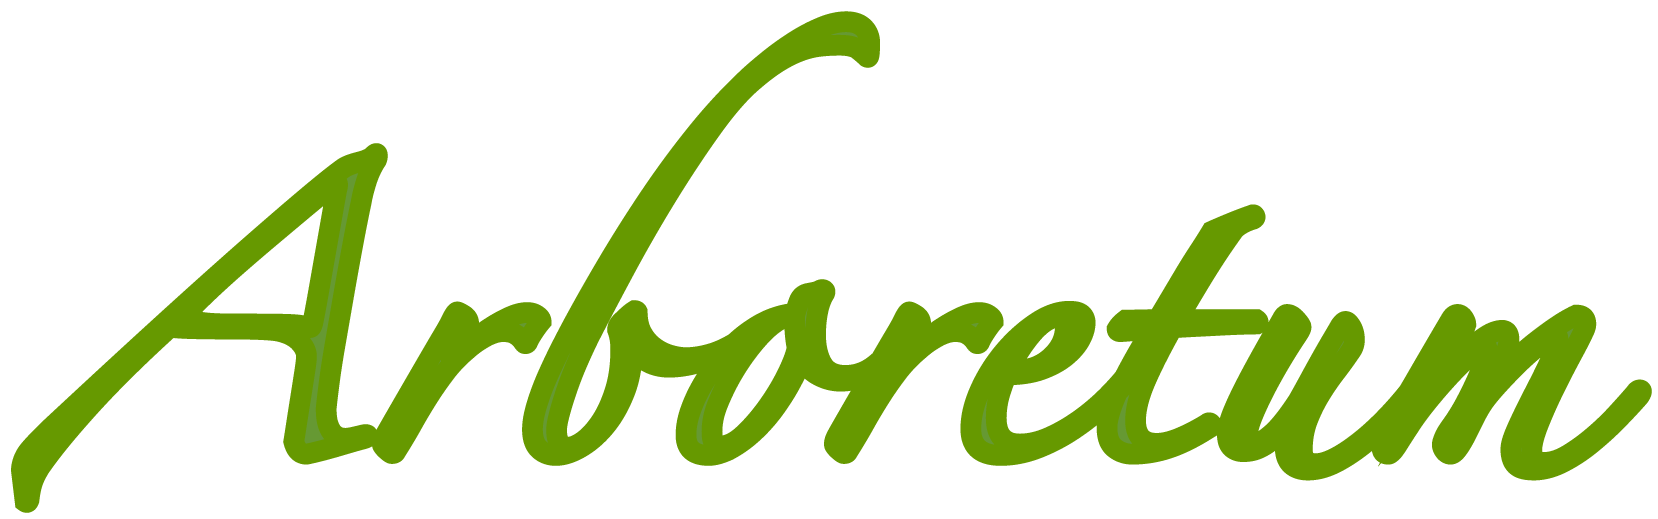 Arboretum logo